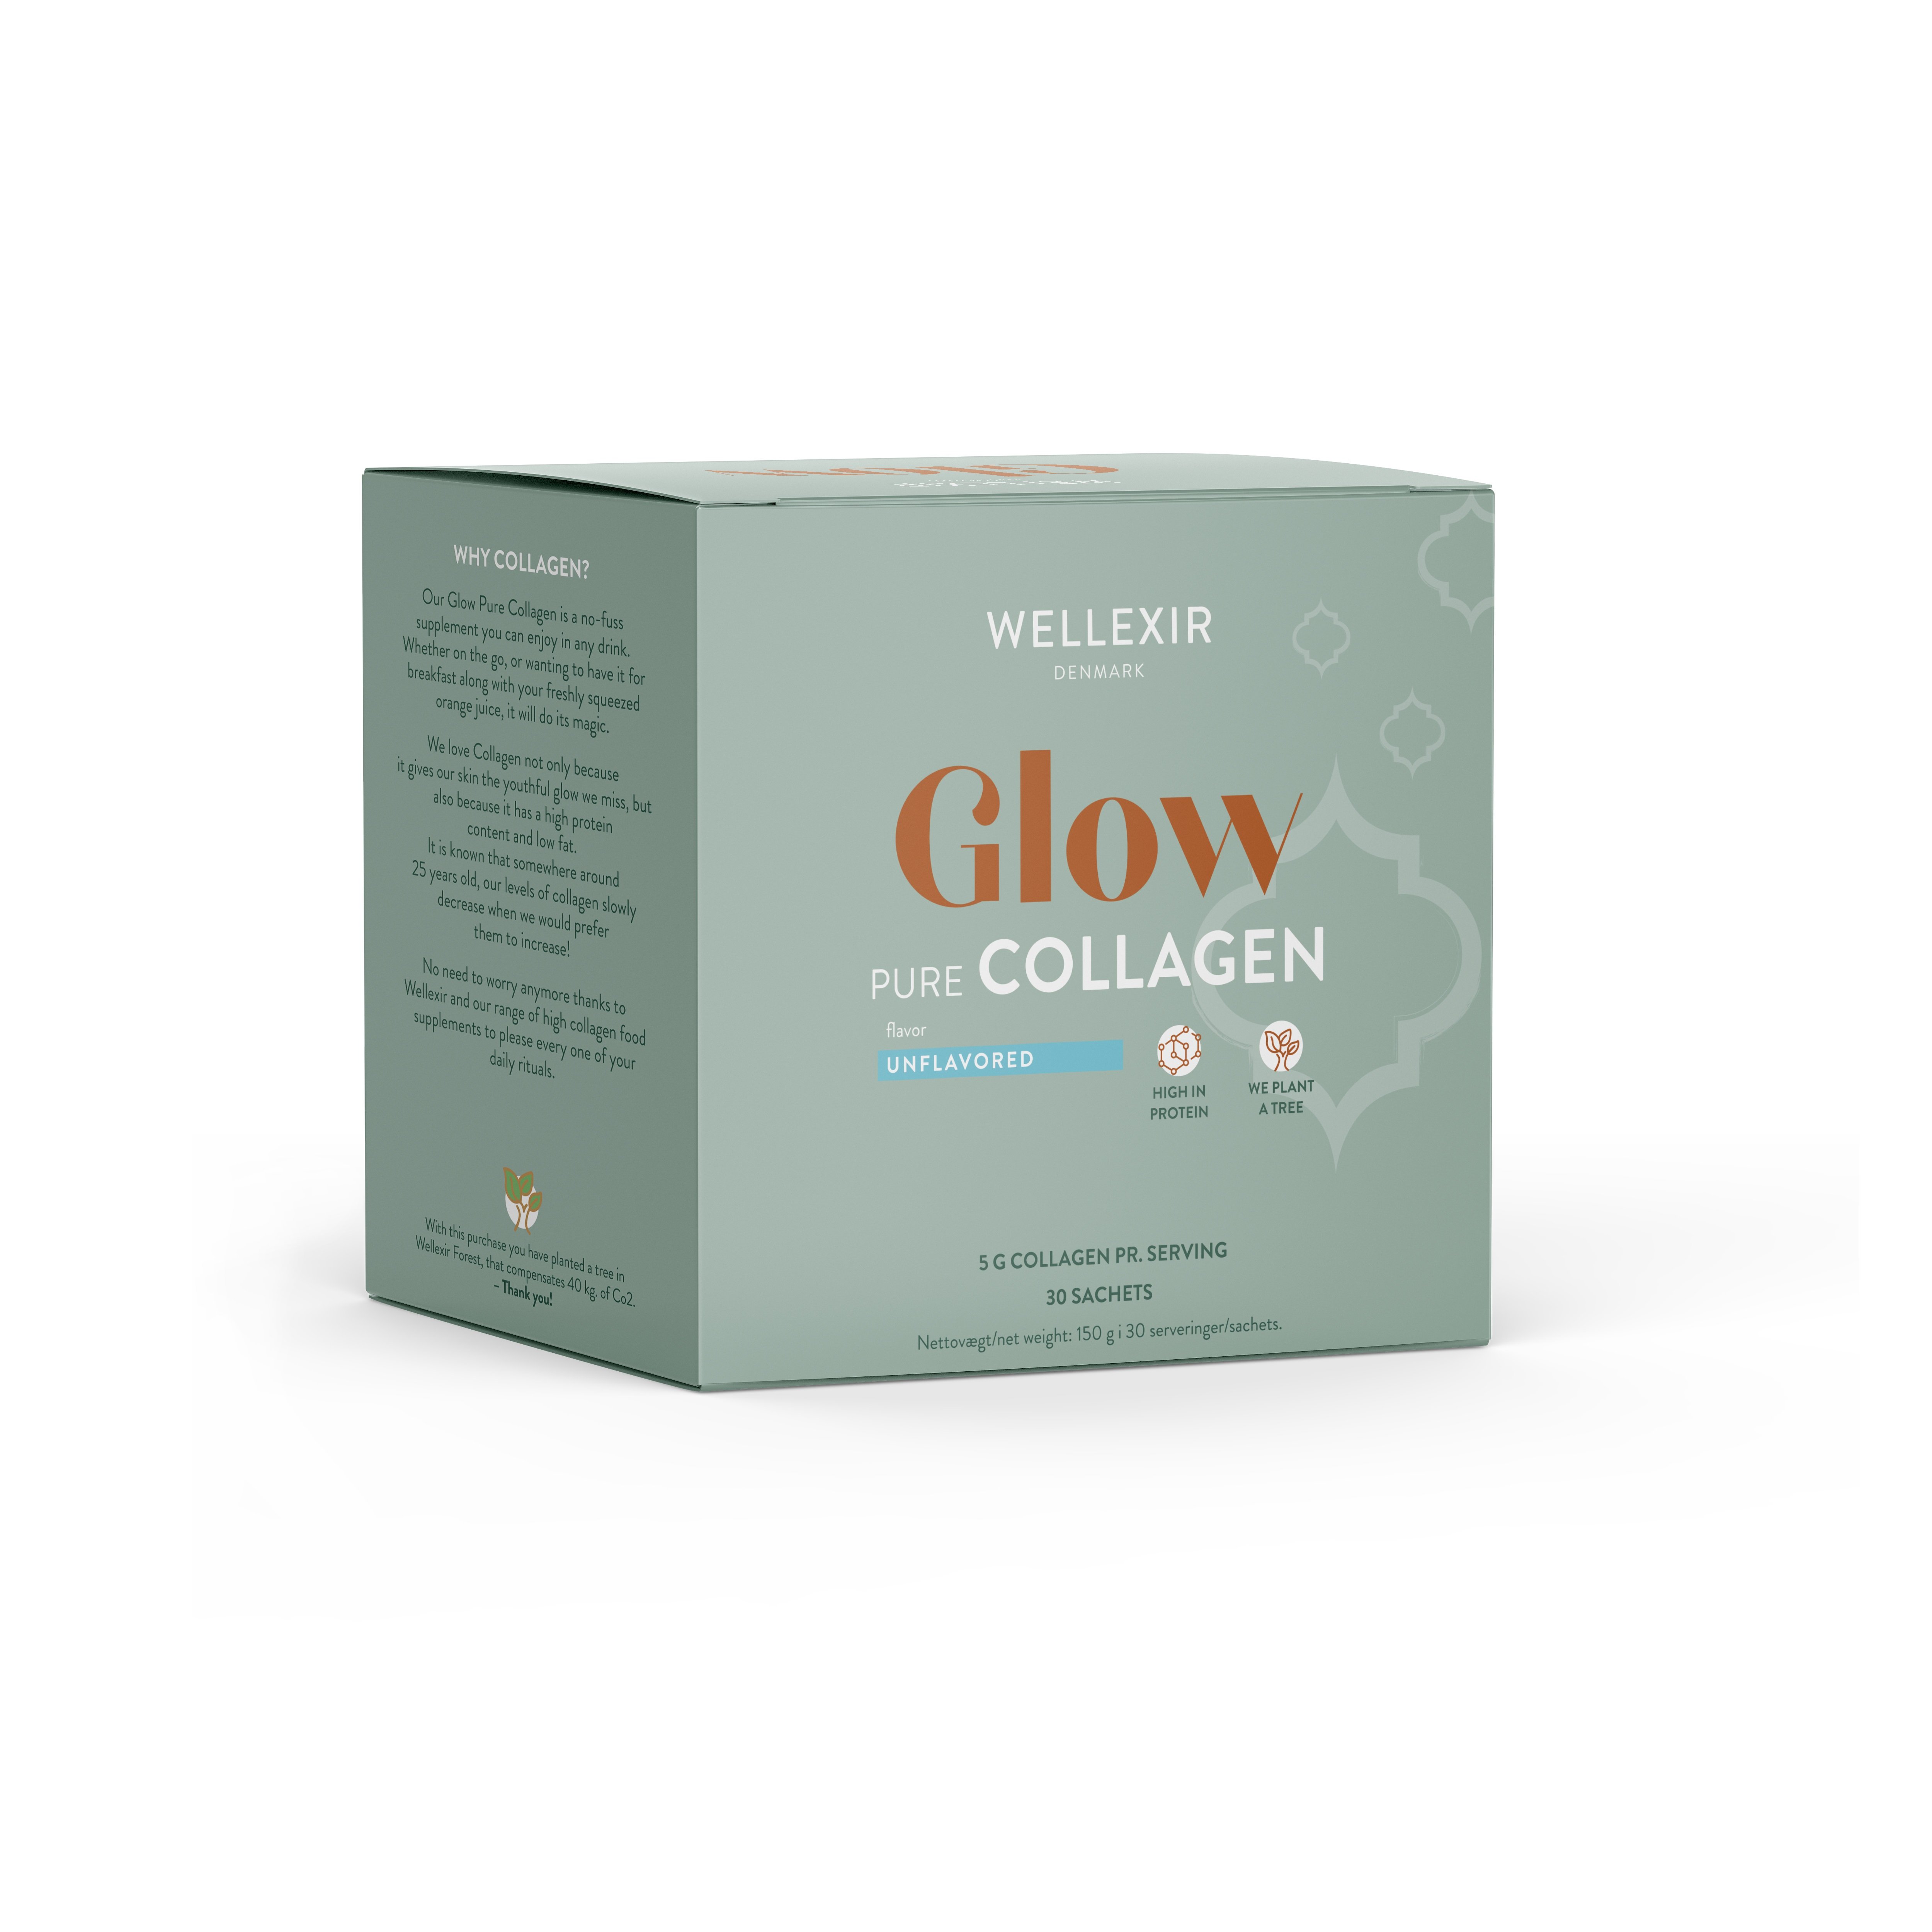 Wellexir – Glow Pure Collagen 30 Sachet Box